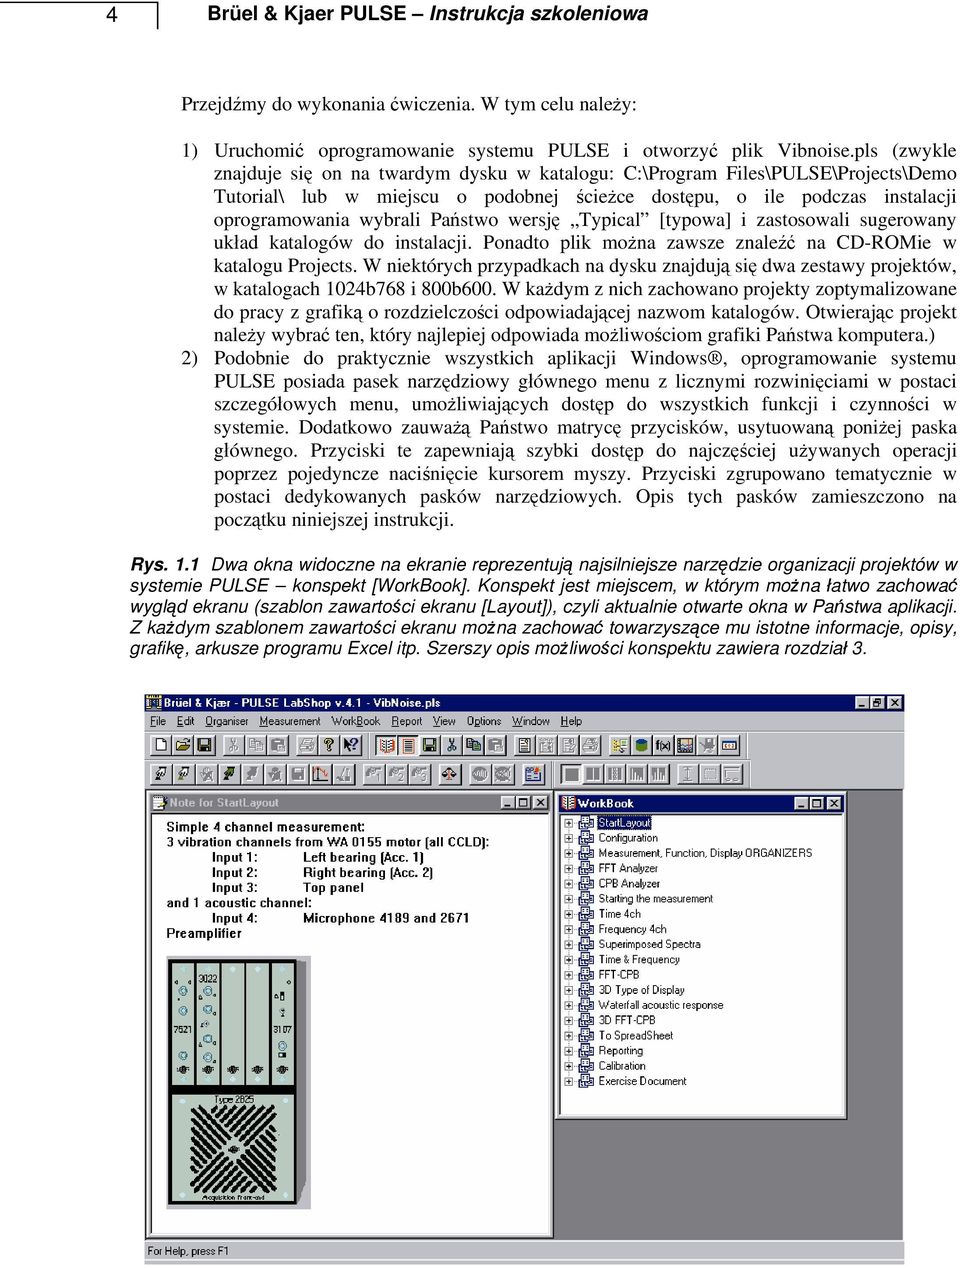 Państwo wersję Typical [typowa] i zastosowali sugerowany układ katalogów do instalacji. Ponadto plik można zawsze znaleźć na CD-ROMie w katalogu Projects.